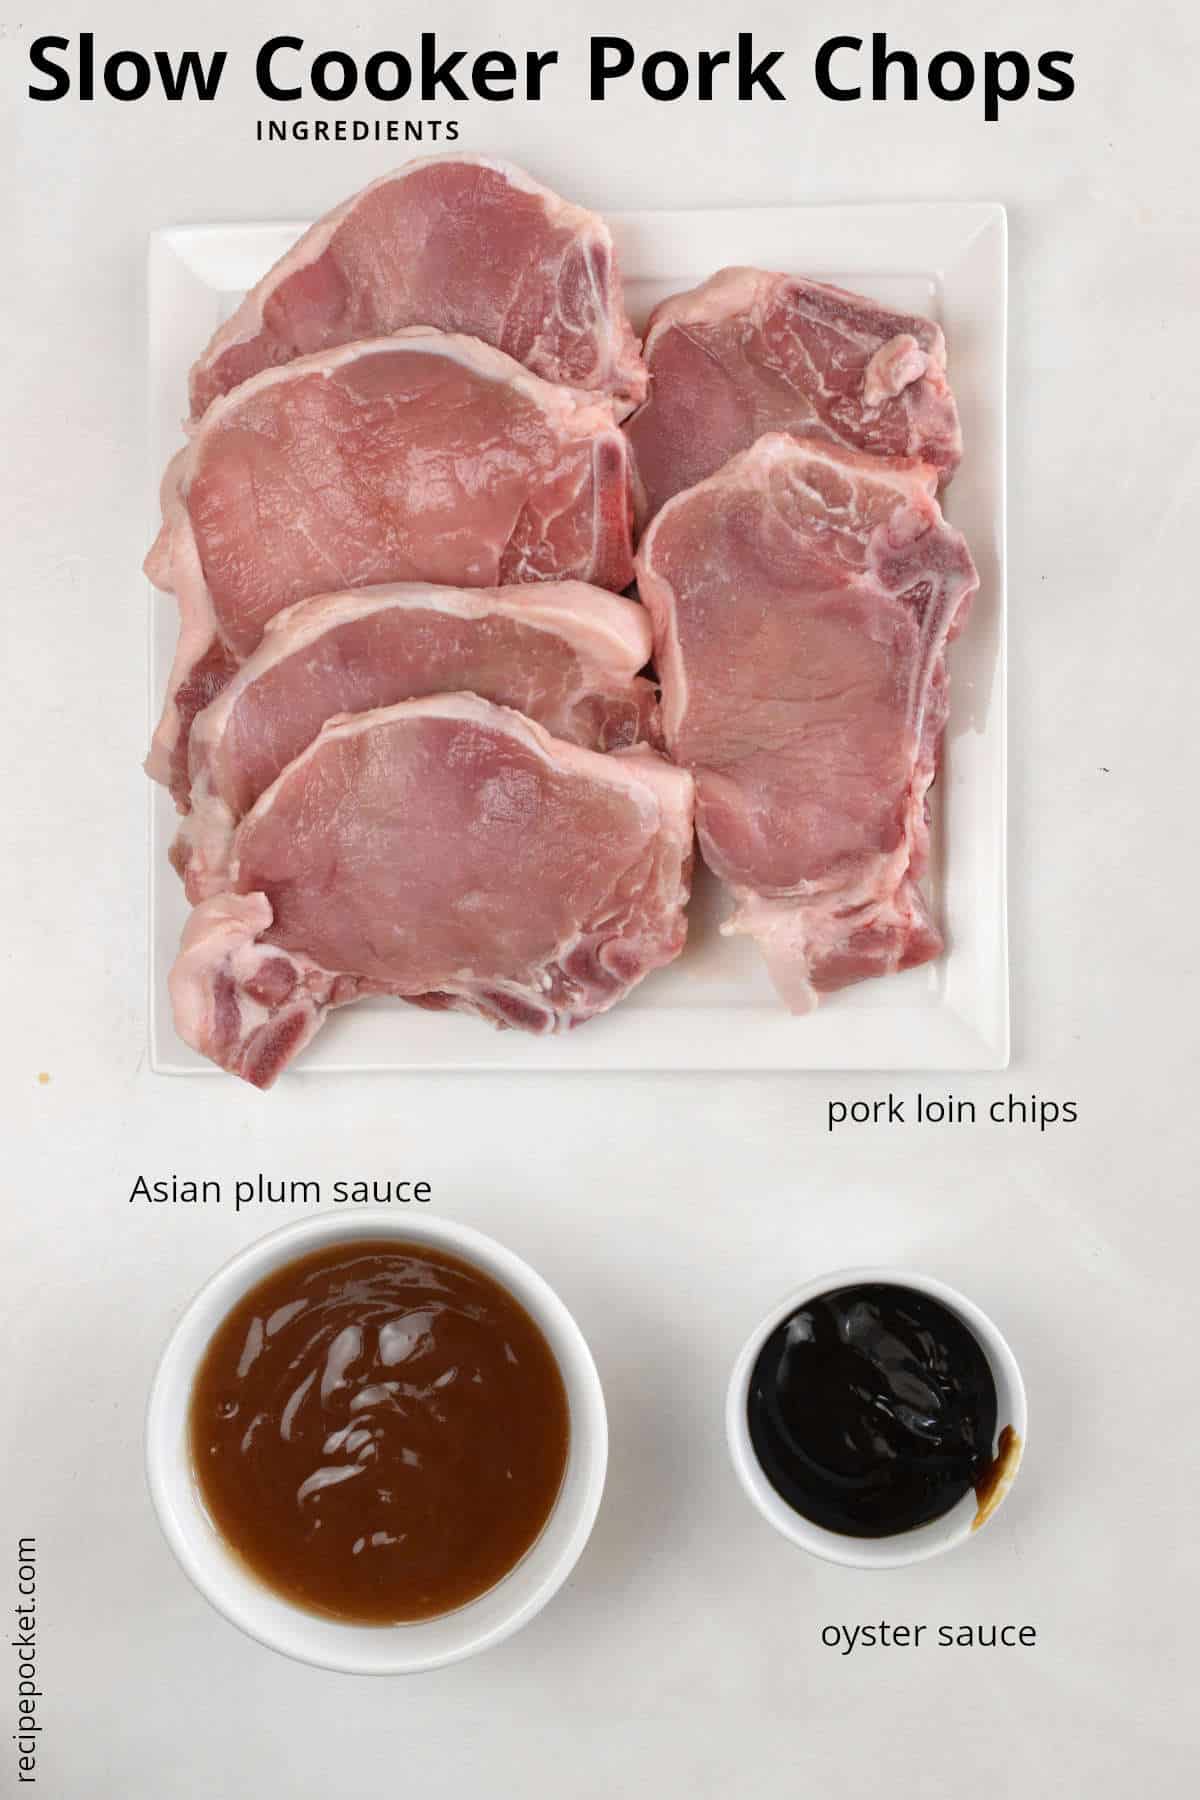 Ingredients image for slow cooker pork chops.